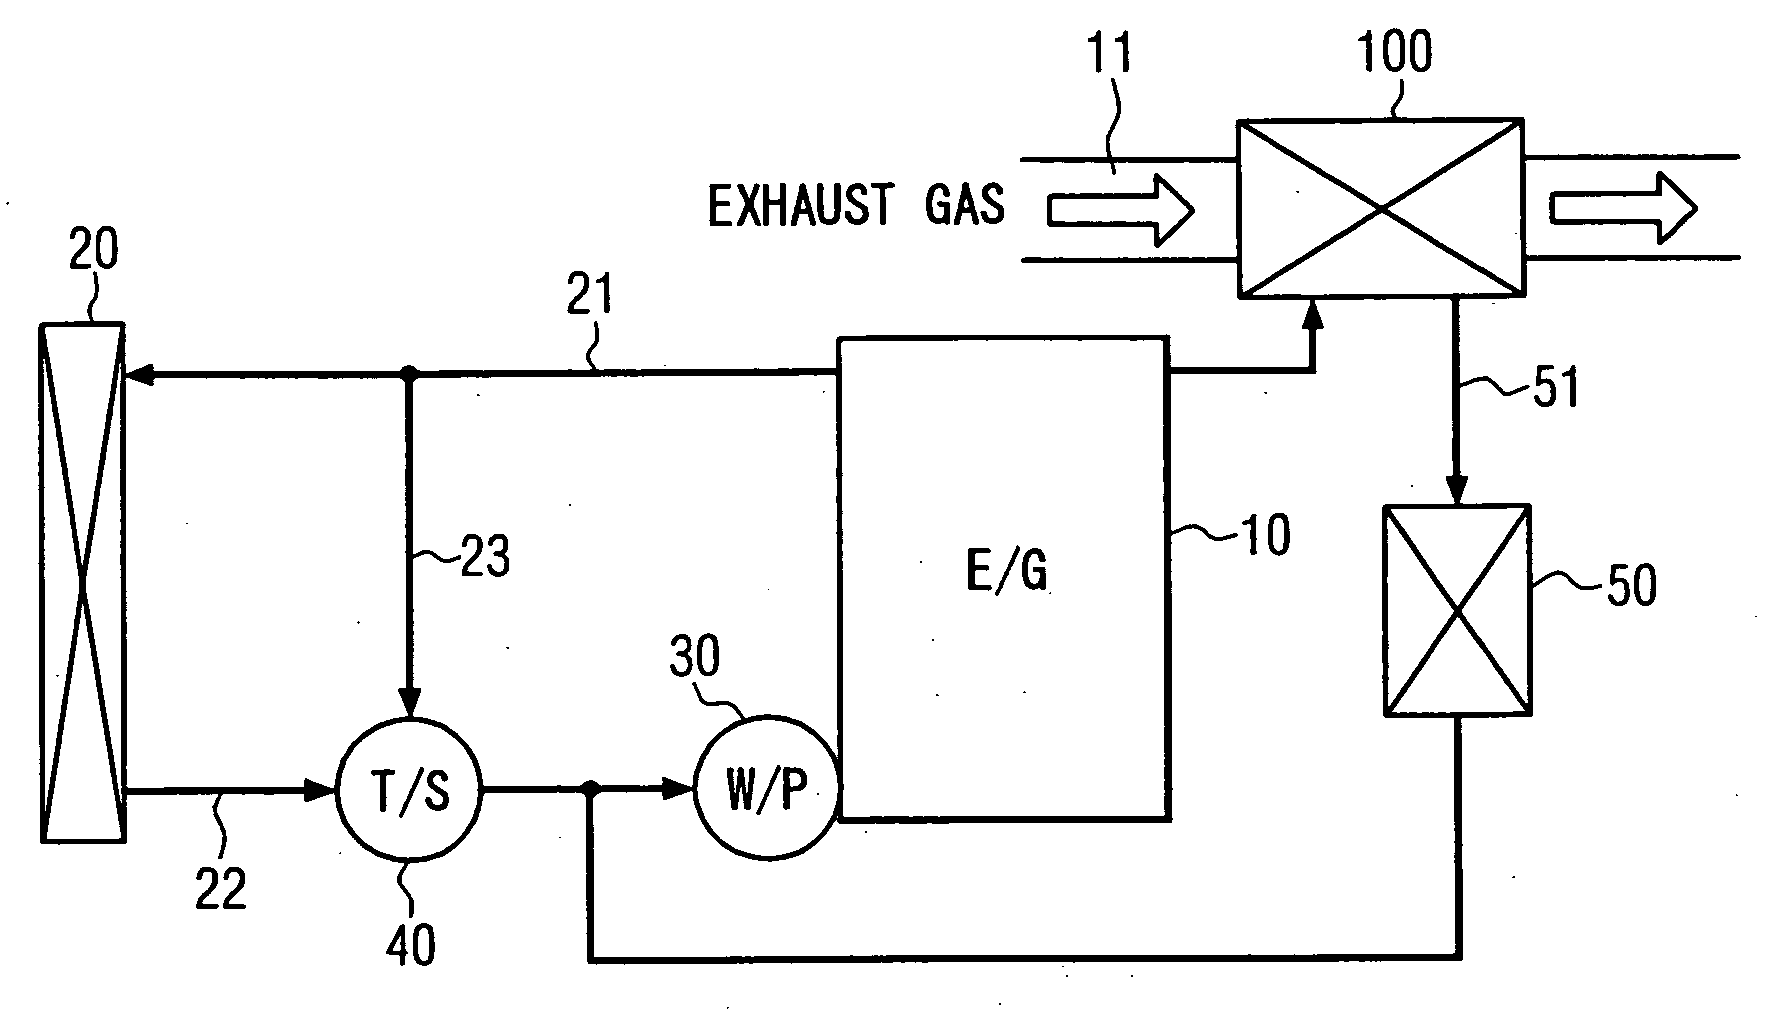 Exhaust gas heat exchanger